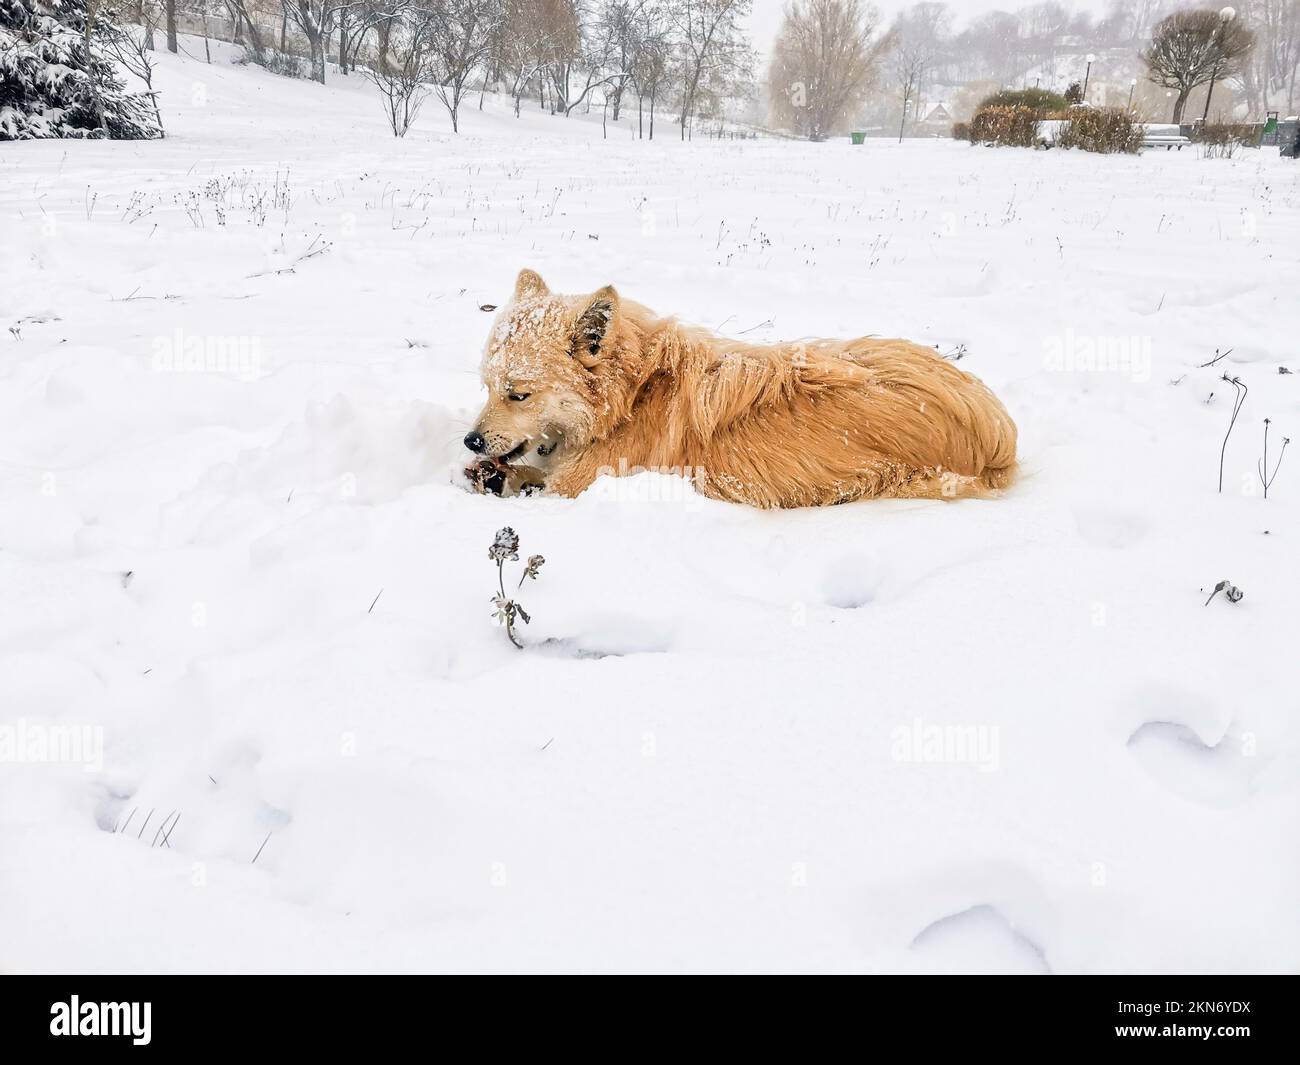 Cane irlandese inverno clima nevoso all'esterno Foto Stock